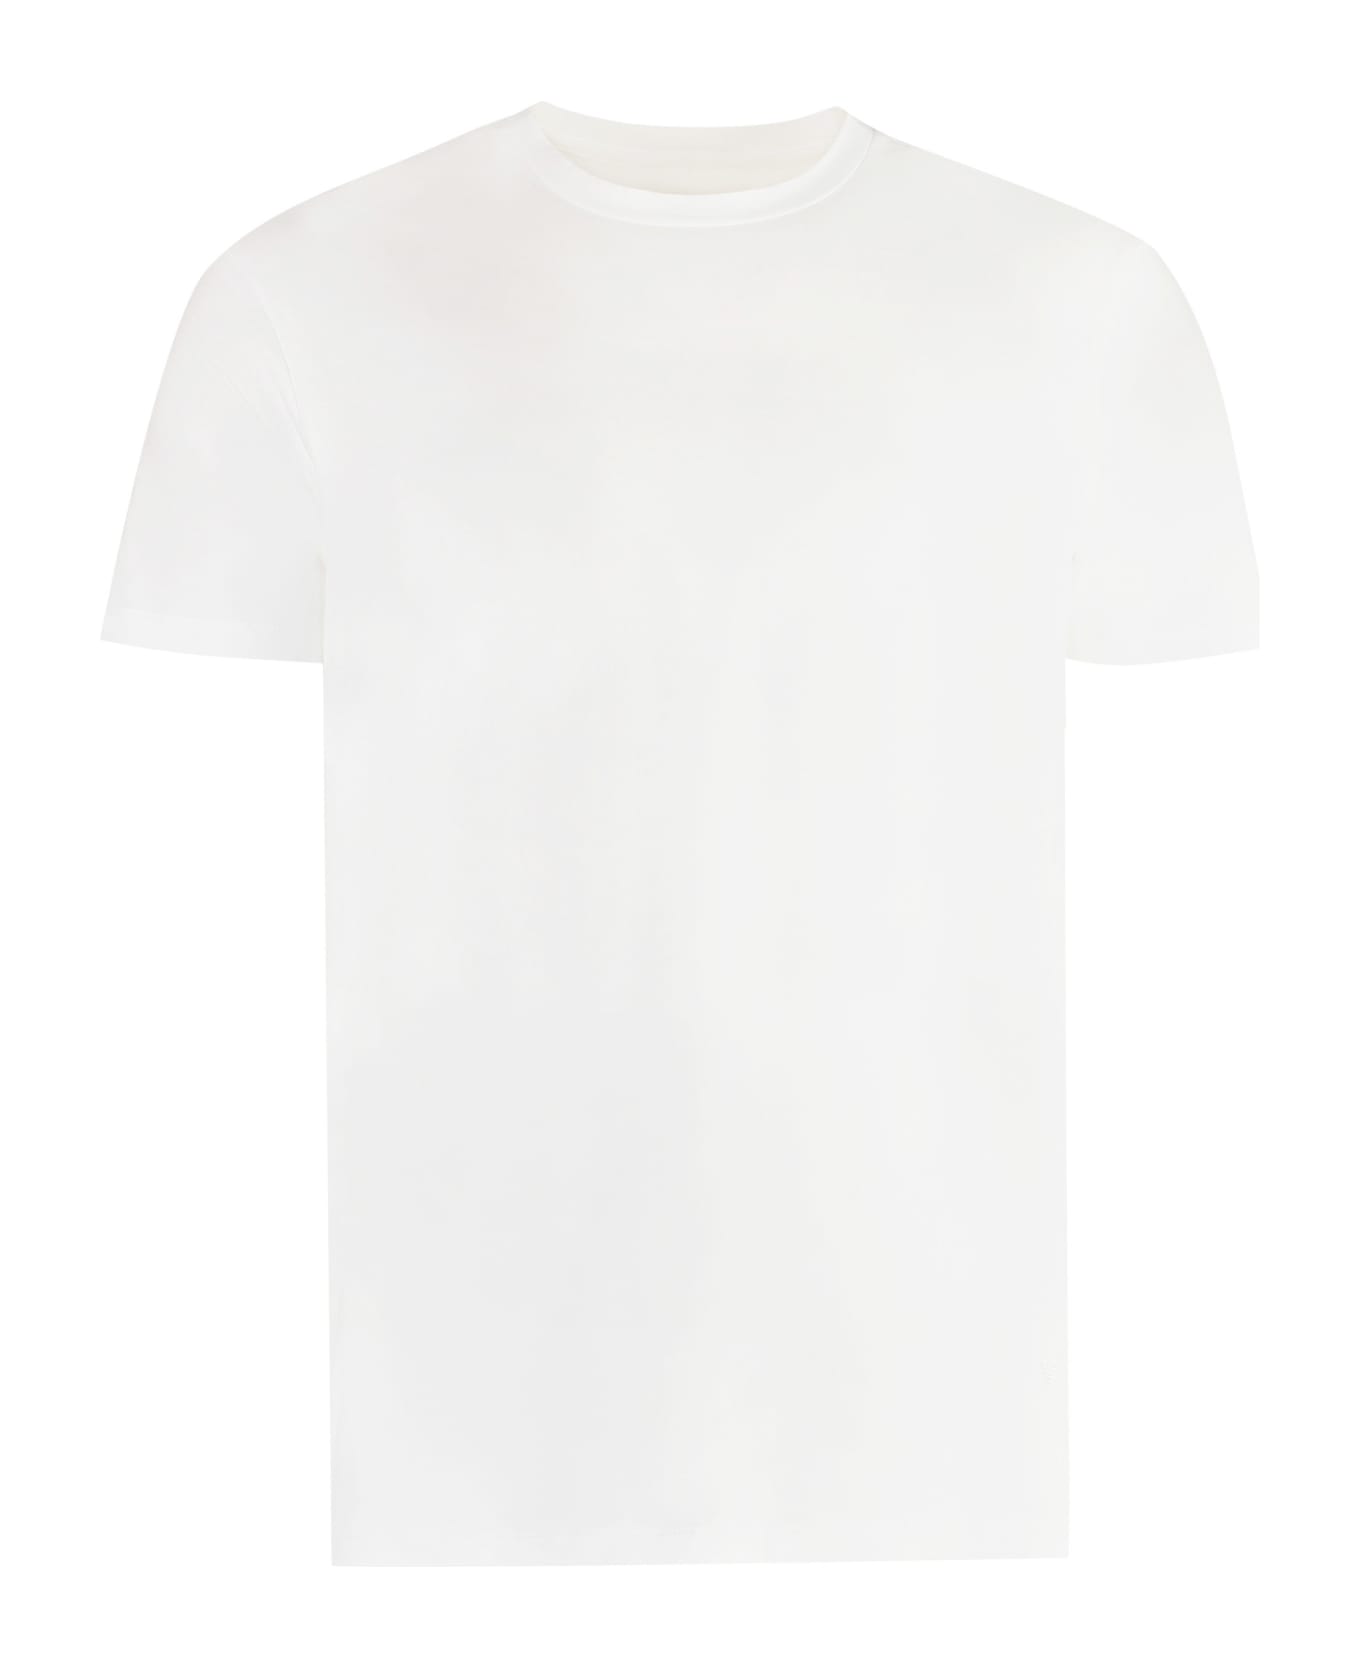 Emporio Armani Viscose Jersey T-shirt - Bianco Ottico シャツ